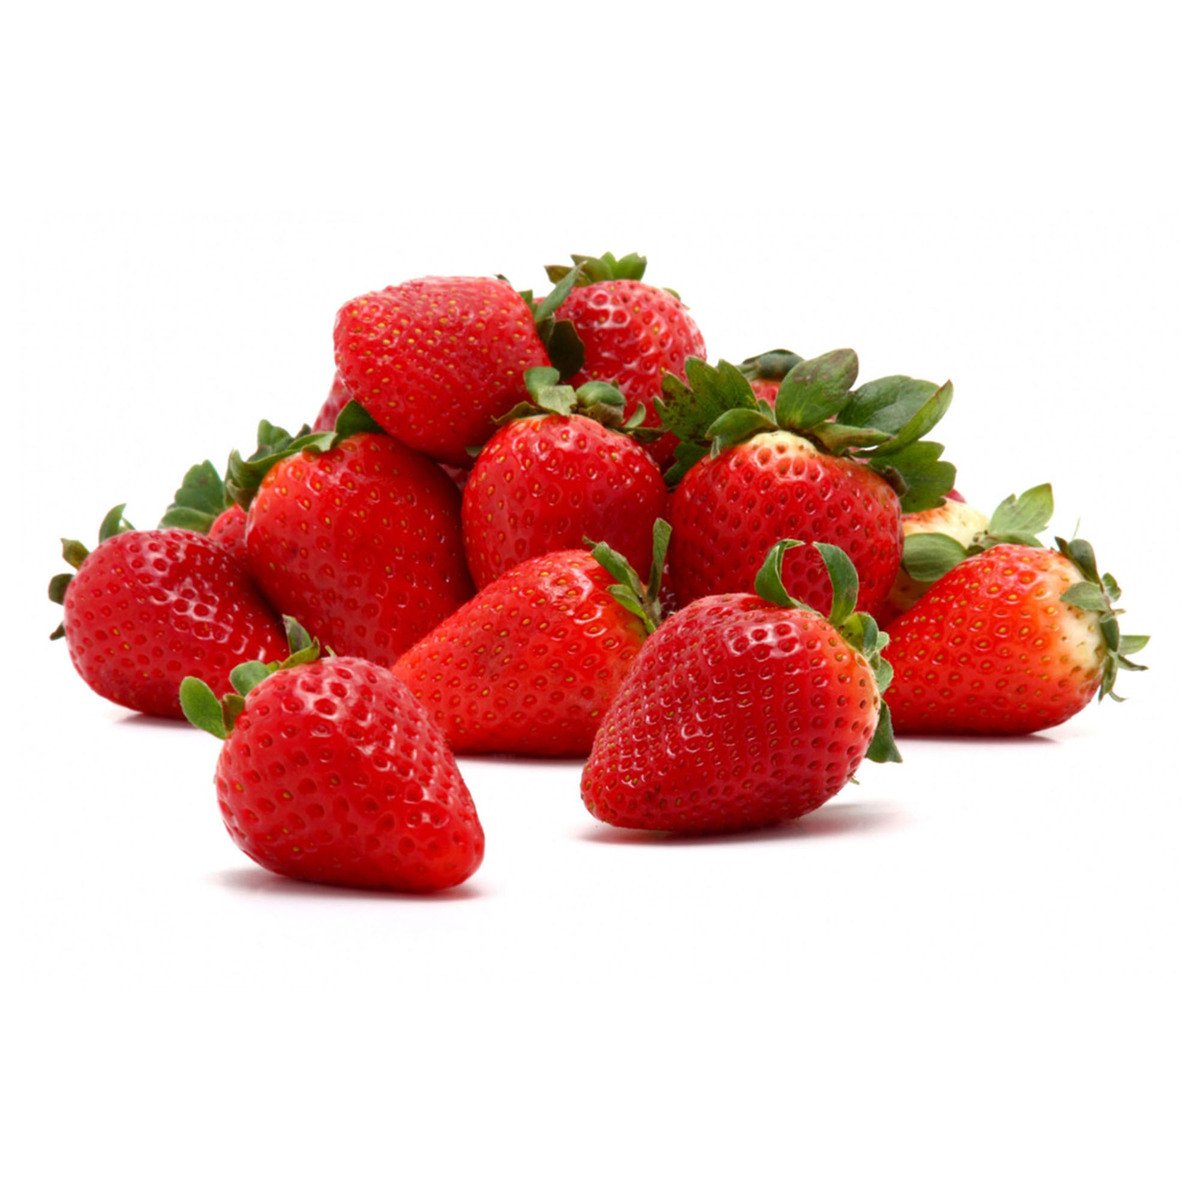 Strawberry UAE 1 kg